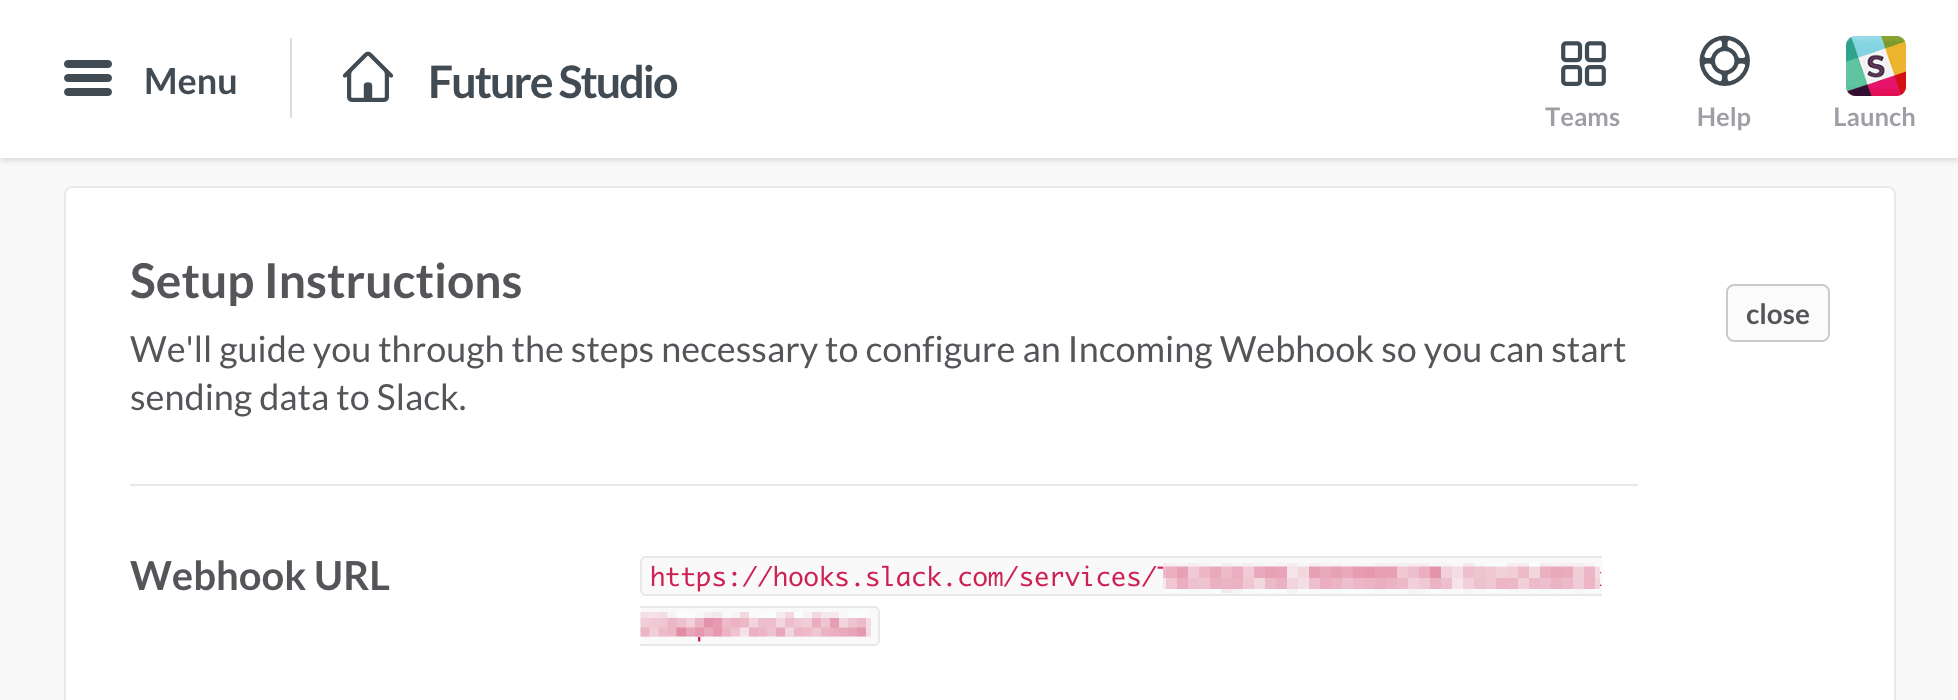 Slack — Webhook Overview